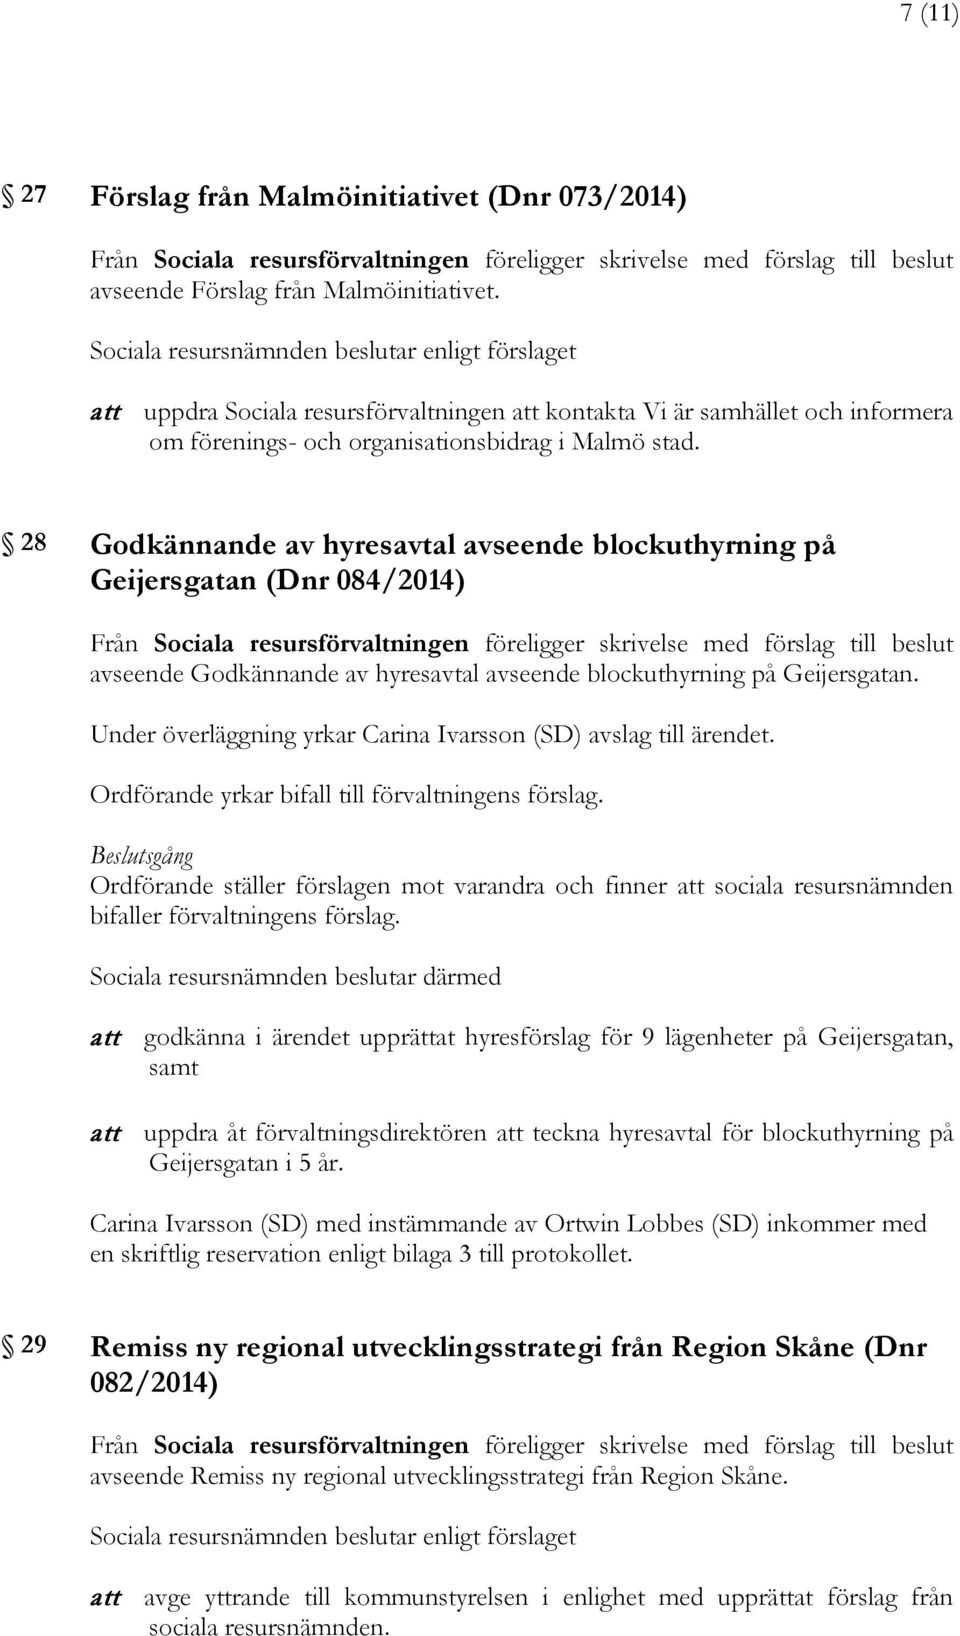 28 Godkännande av hyresavtal avseende blockuthyrning på Geijersgatan (Dnr 084/2014) avseende Godkännande av hyresavtal avseende blockuthyrning på Geijersgatan.